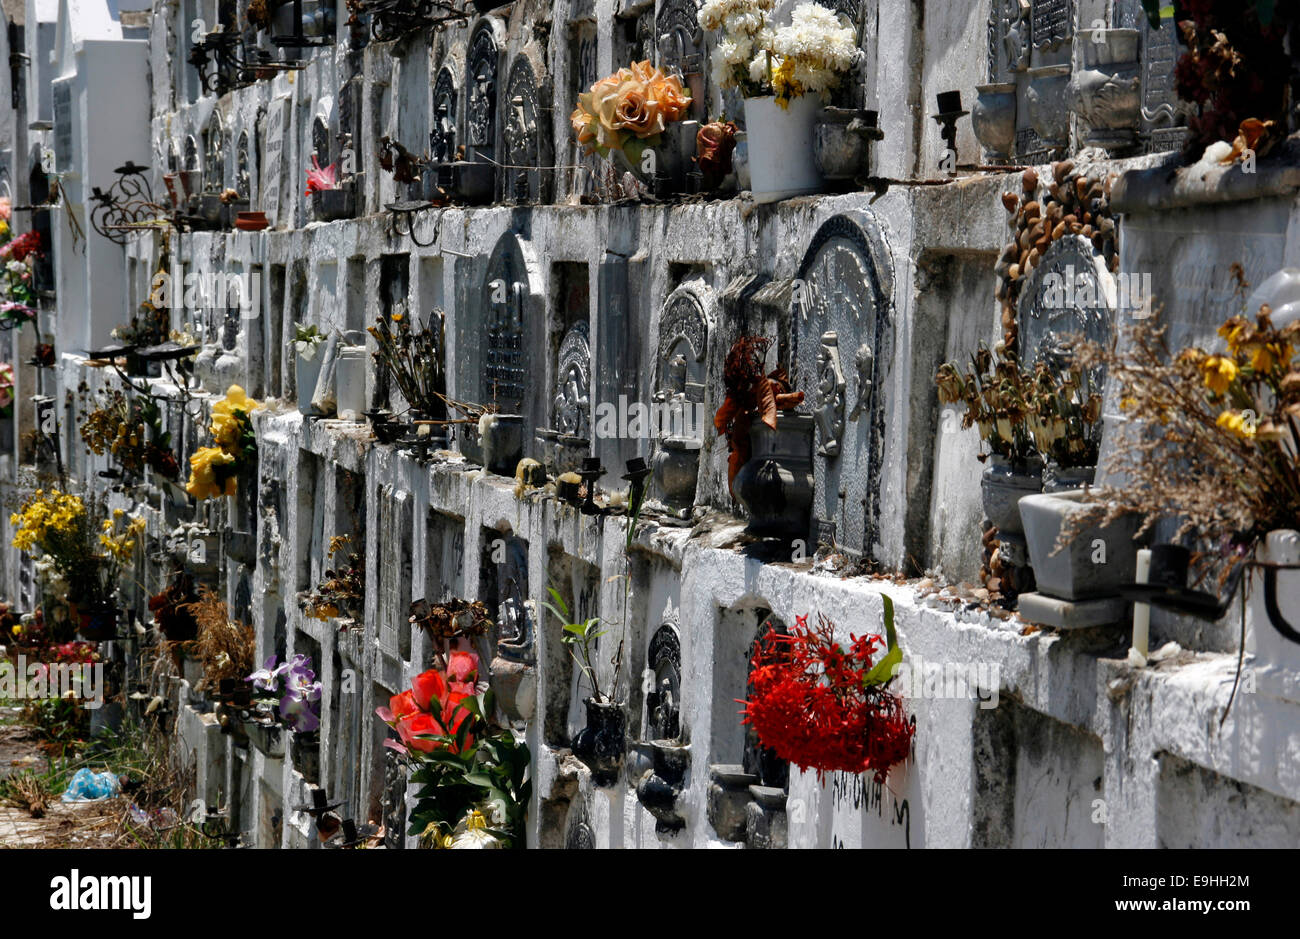 Flowers on the graves in the Cementerio De Mompox in Santa Cruz de Mompox, Colombia Stock Photo